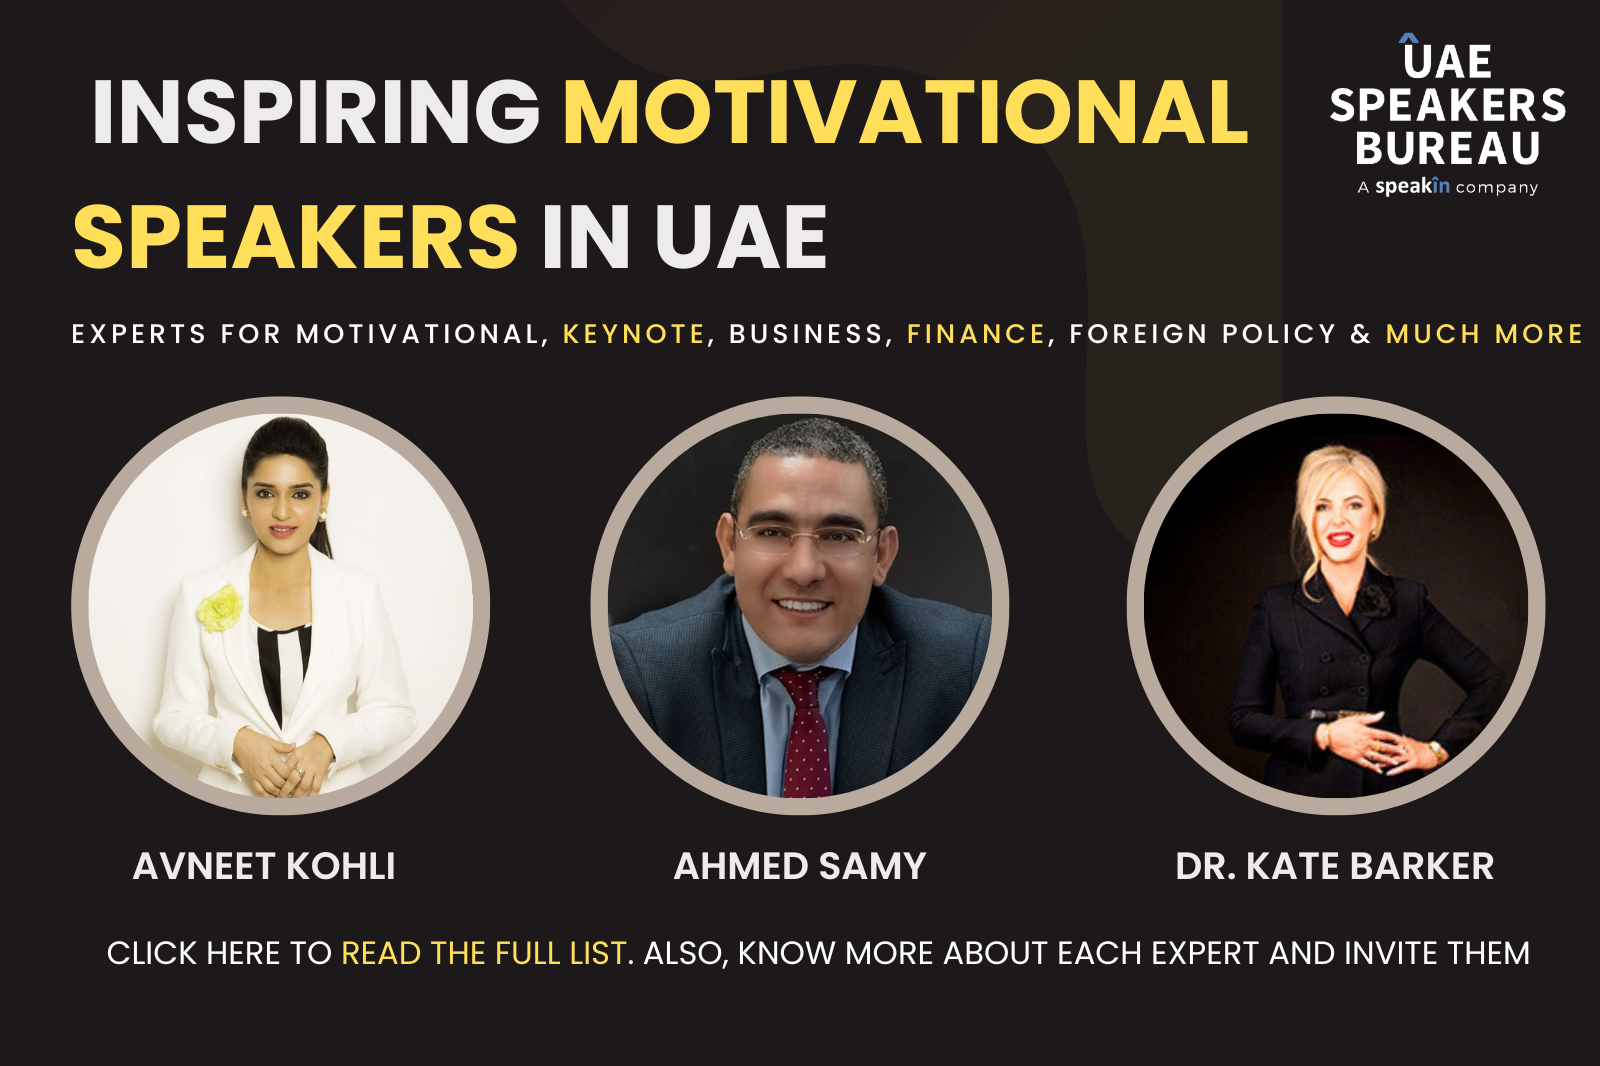 Inspiring Motivational Speakers in Dubai - UAE